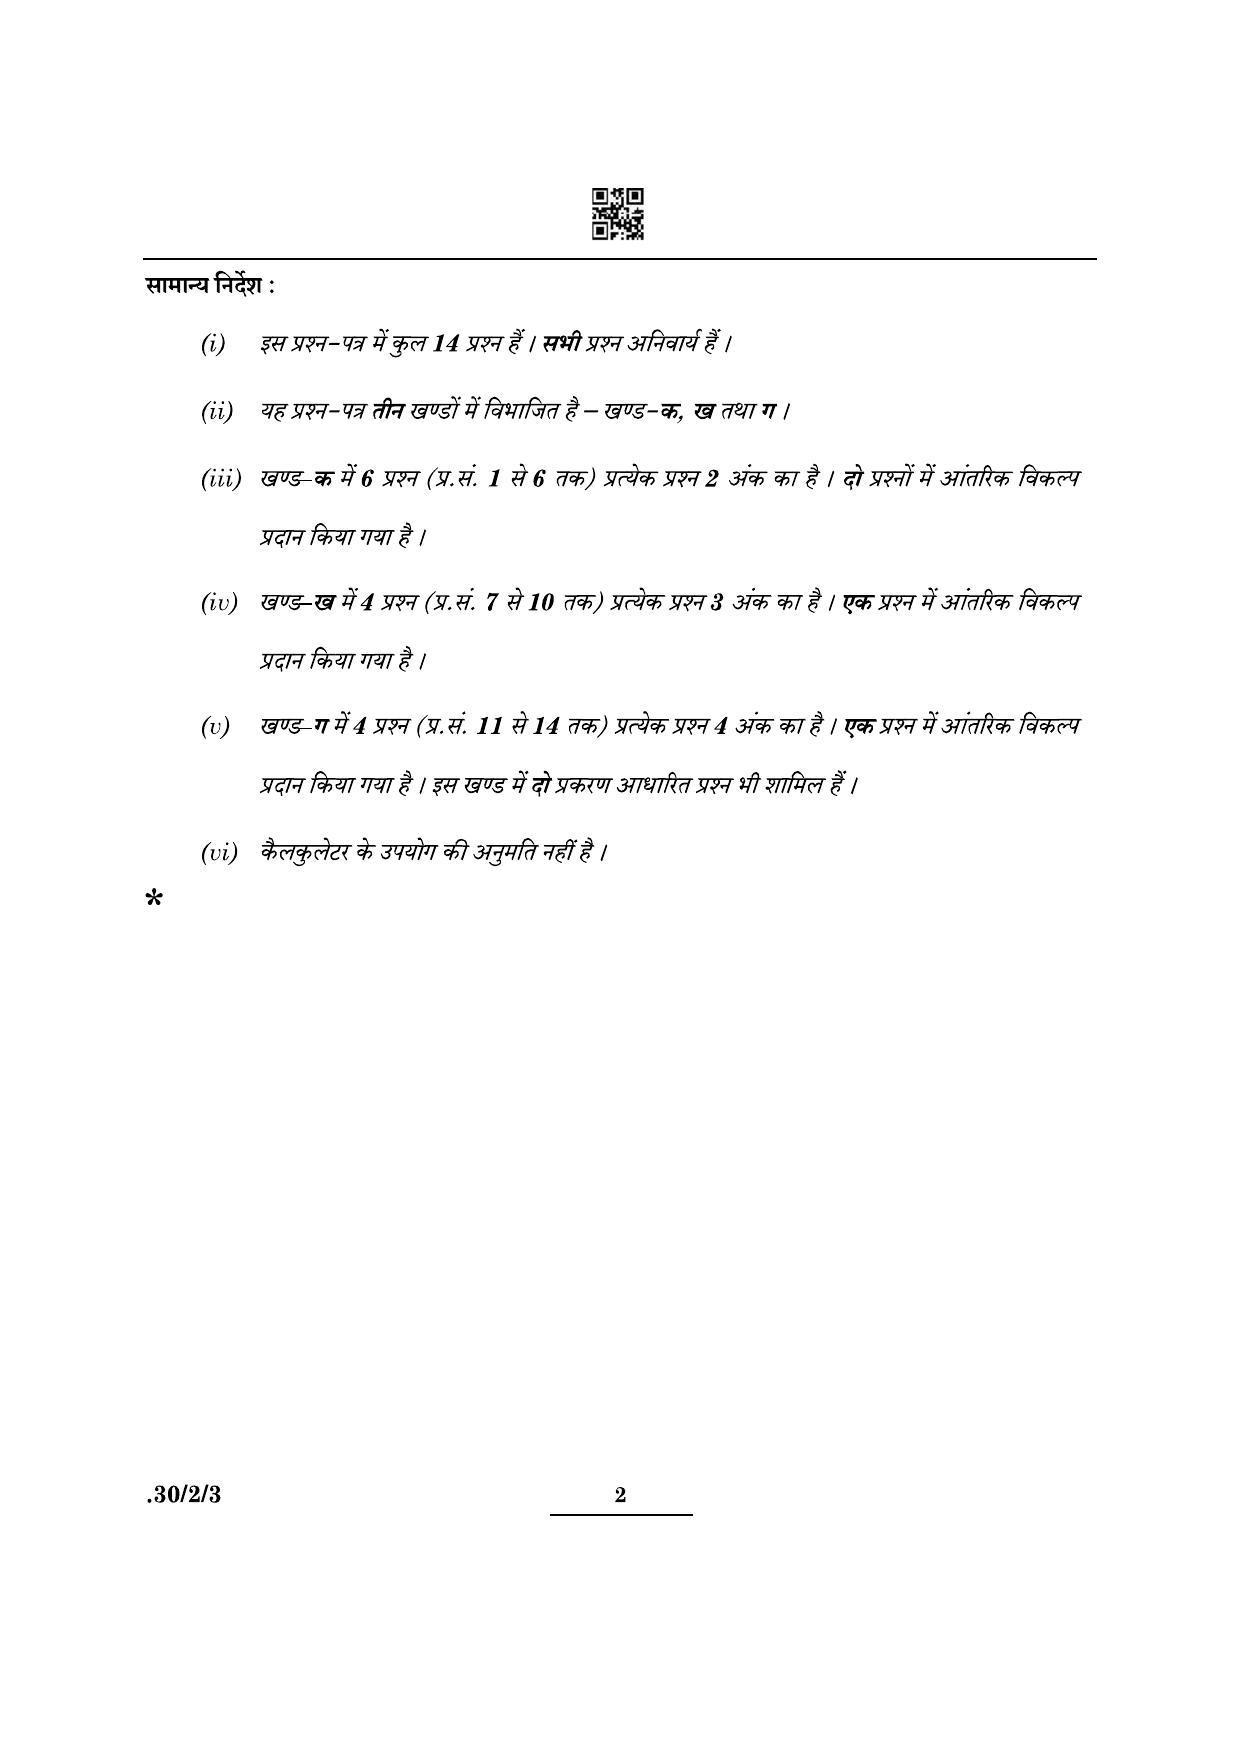 CBSE Class 10 Maths (30/2/3 - SET III) 2022 Question Paper - Page 2